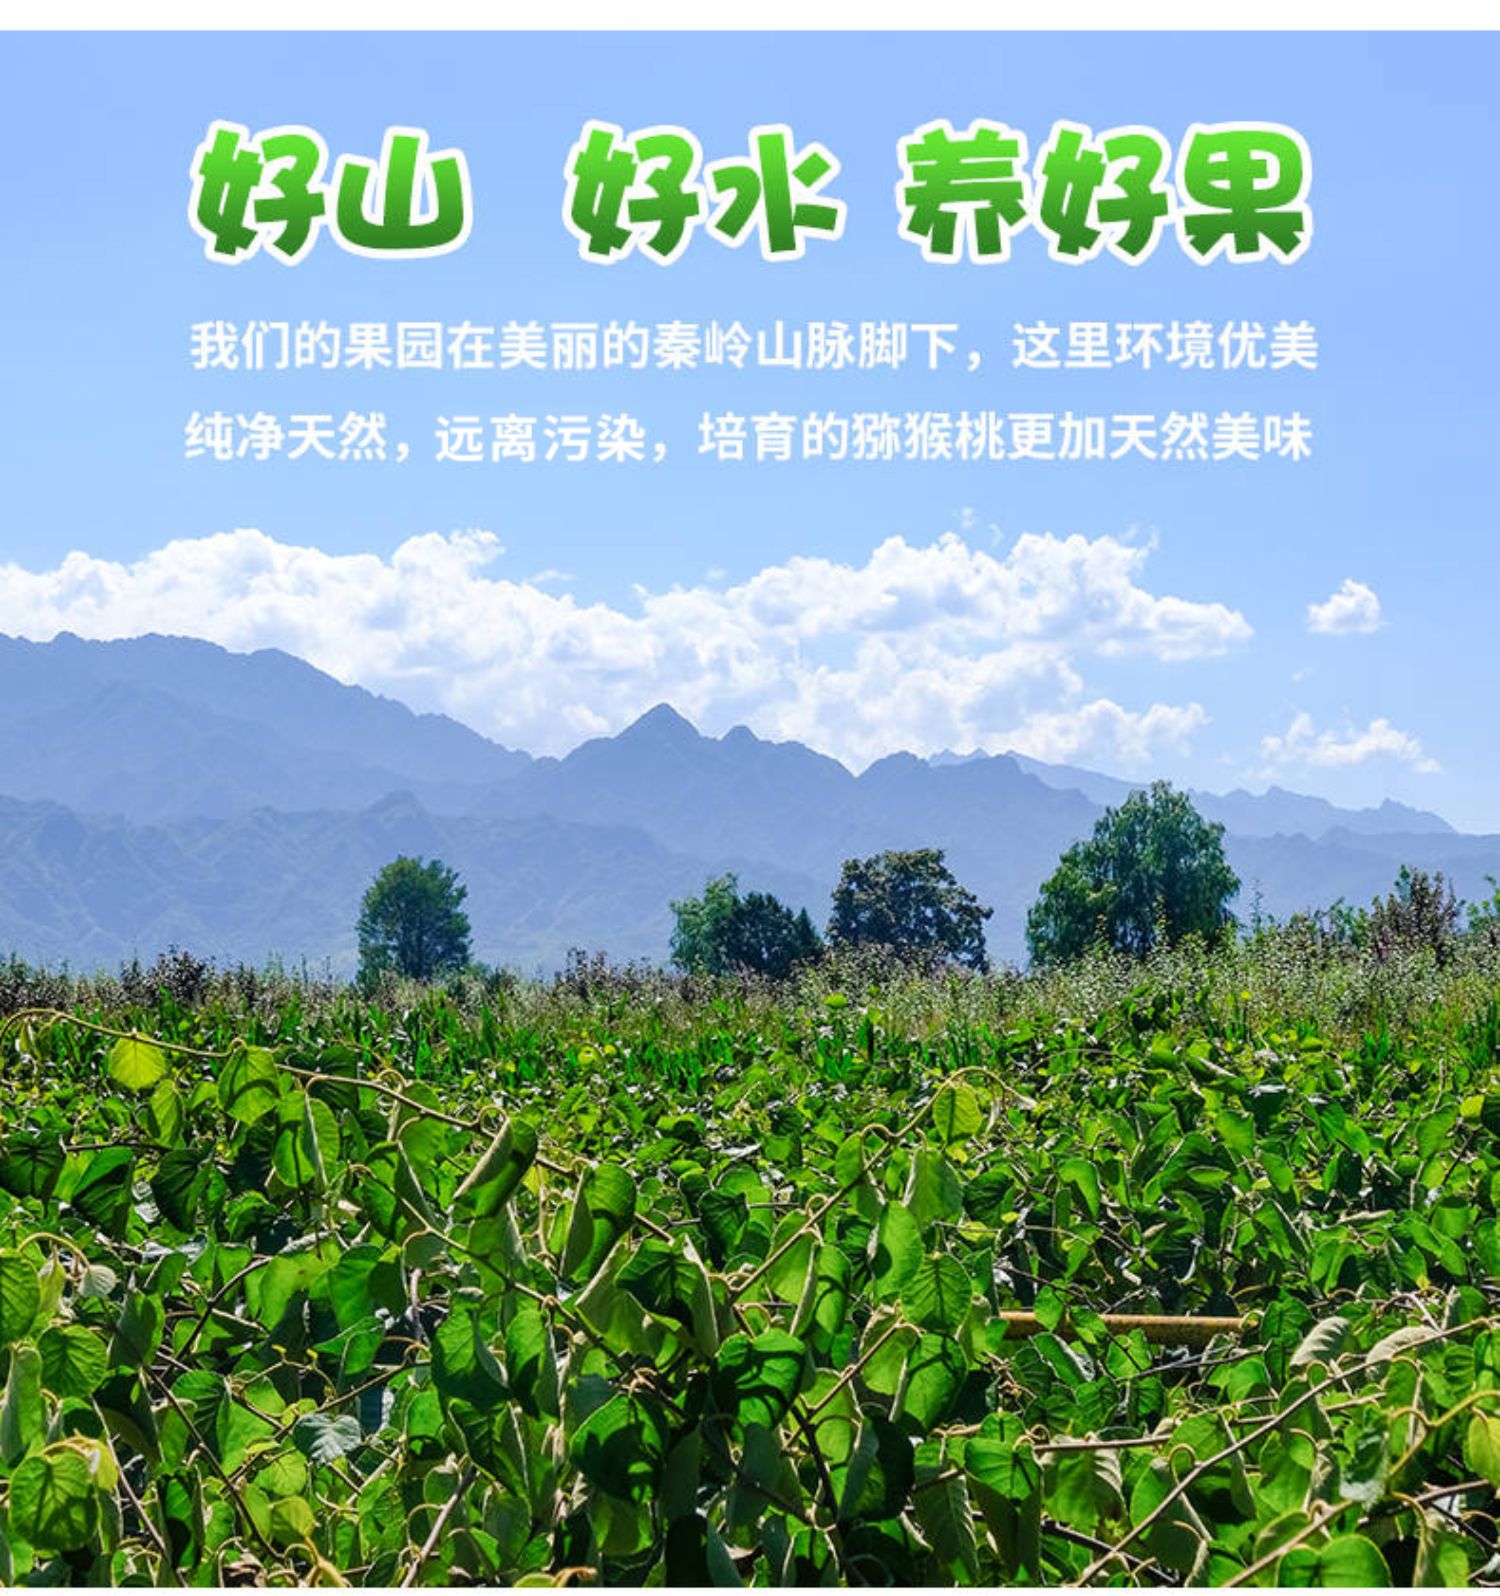 “中国猕猴桃之乡”西安市周至县开启2019年周至猕猴桃销售季